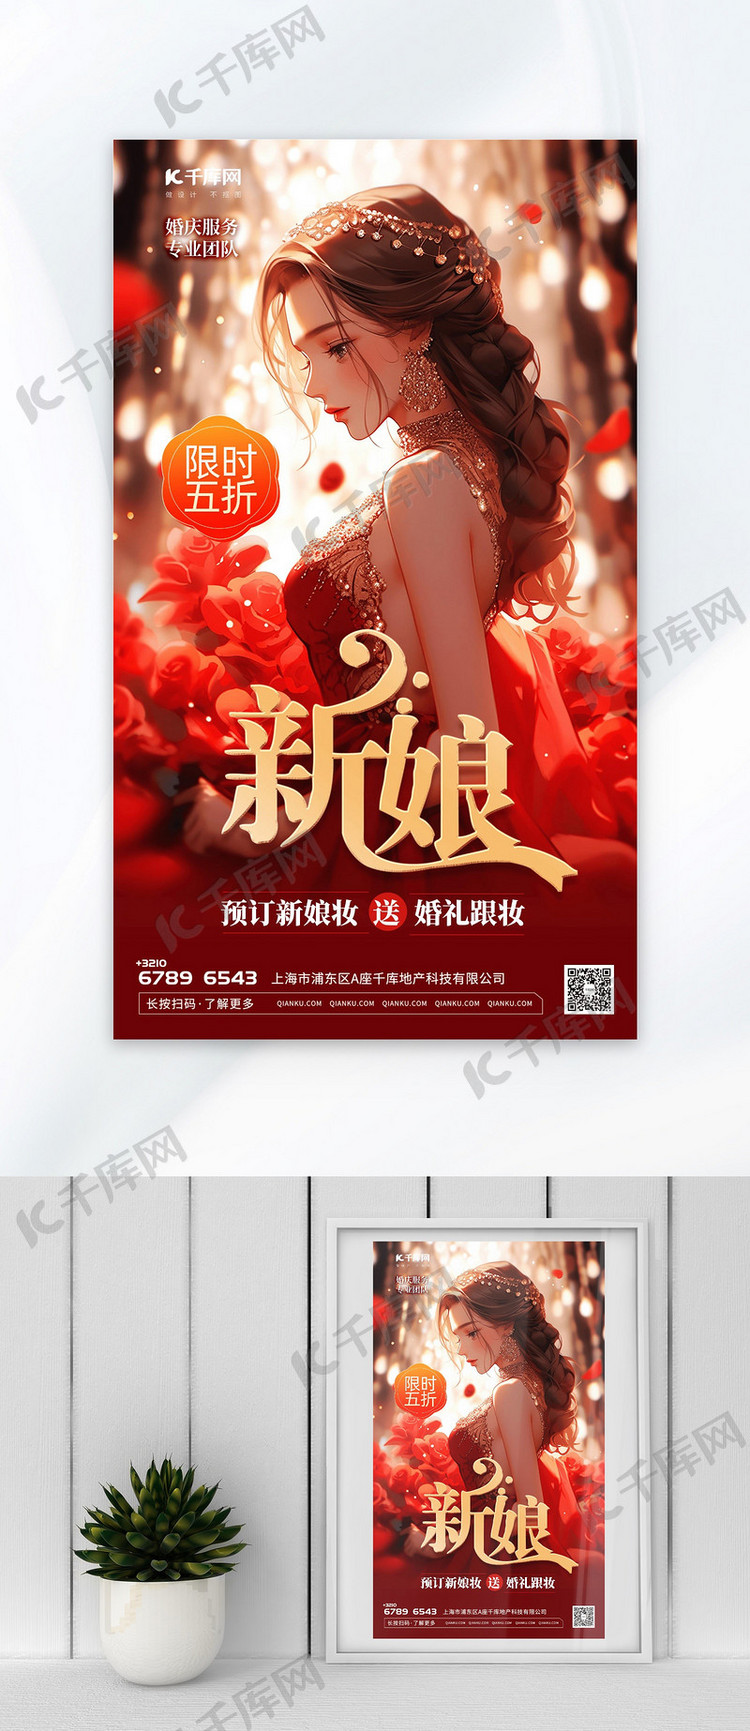 大气新娘快乐插画红色渐变AIGC广告宣传海报